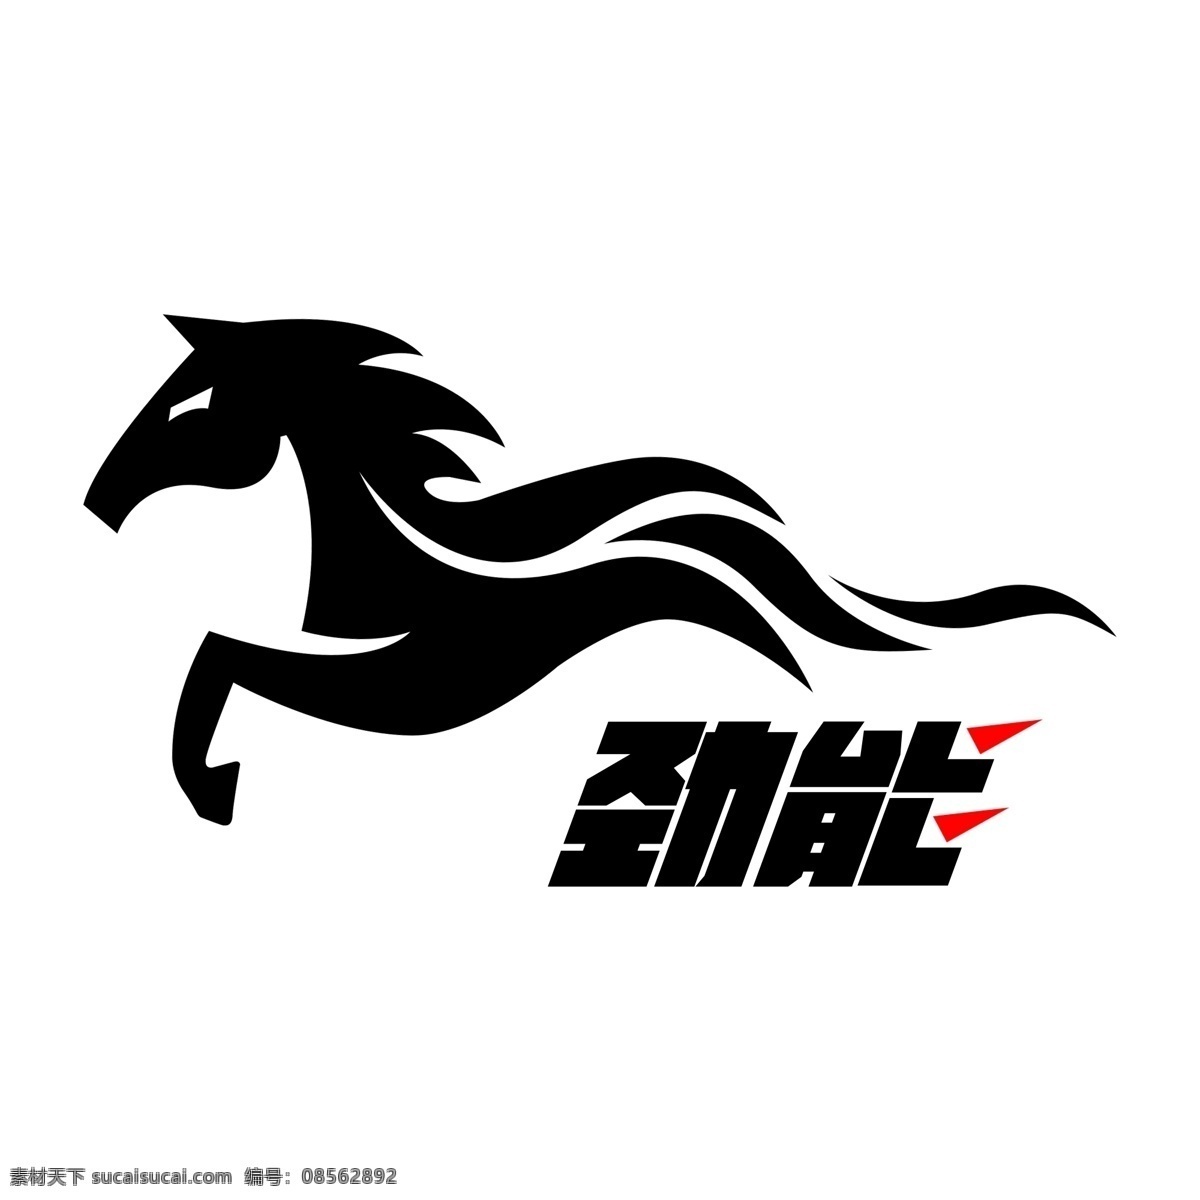 马 形 功能性 饮料 logo 劲 马logo 饮料logo logo设计 动物logo 标志设计 力量logo 功能饮料 动物标志